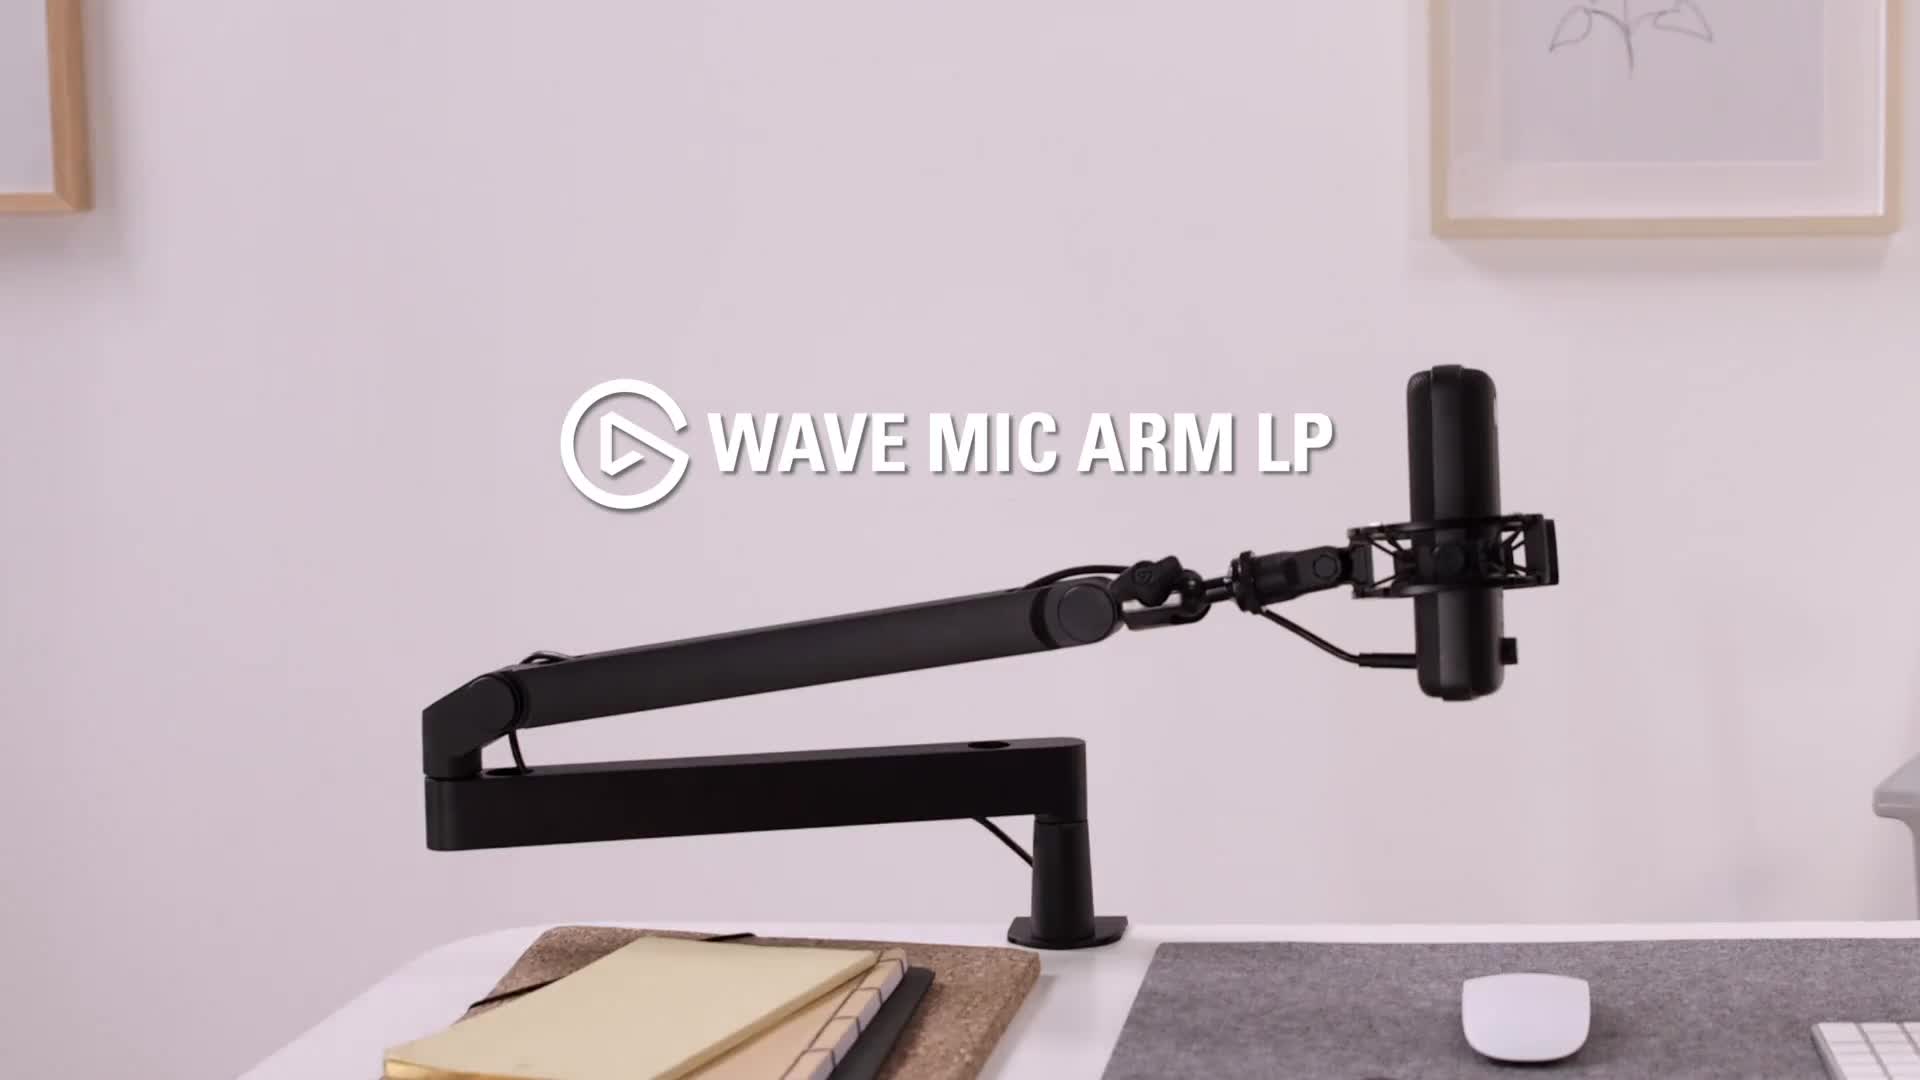 Wave Mic Arm LP Trailer